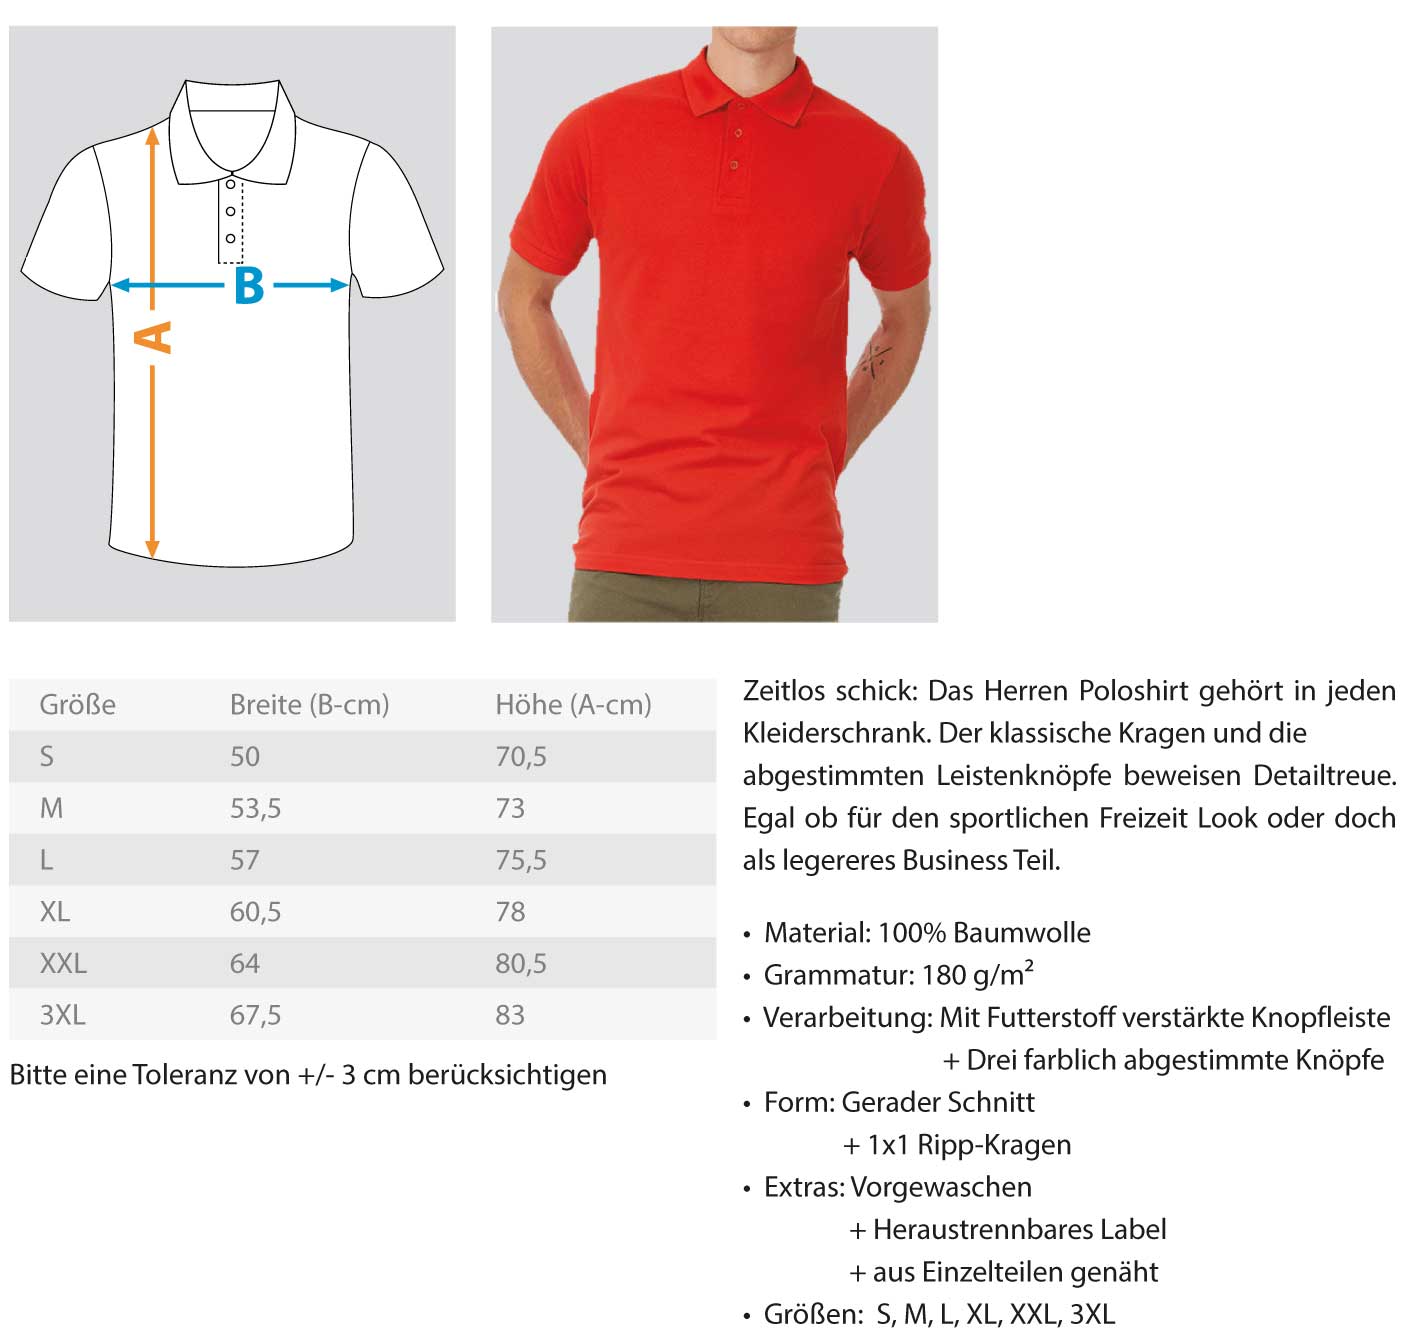 Handwerk mit Tradition Gerüstbauer  - Polo Shirt €34.95 Gerüstbauer - Shop >>